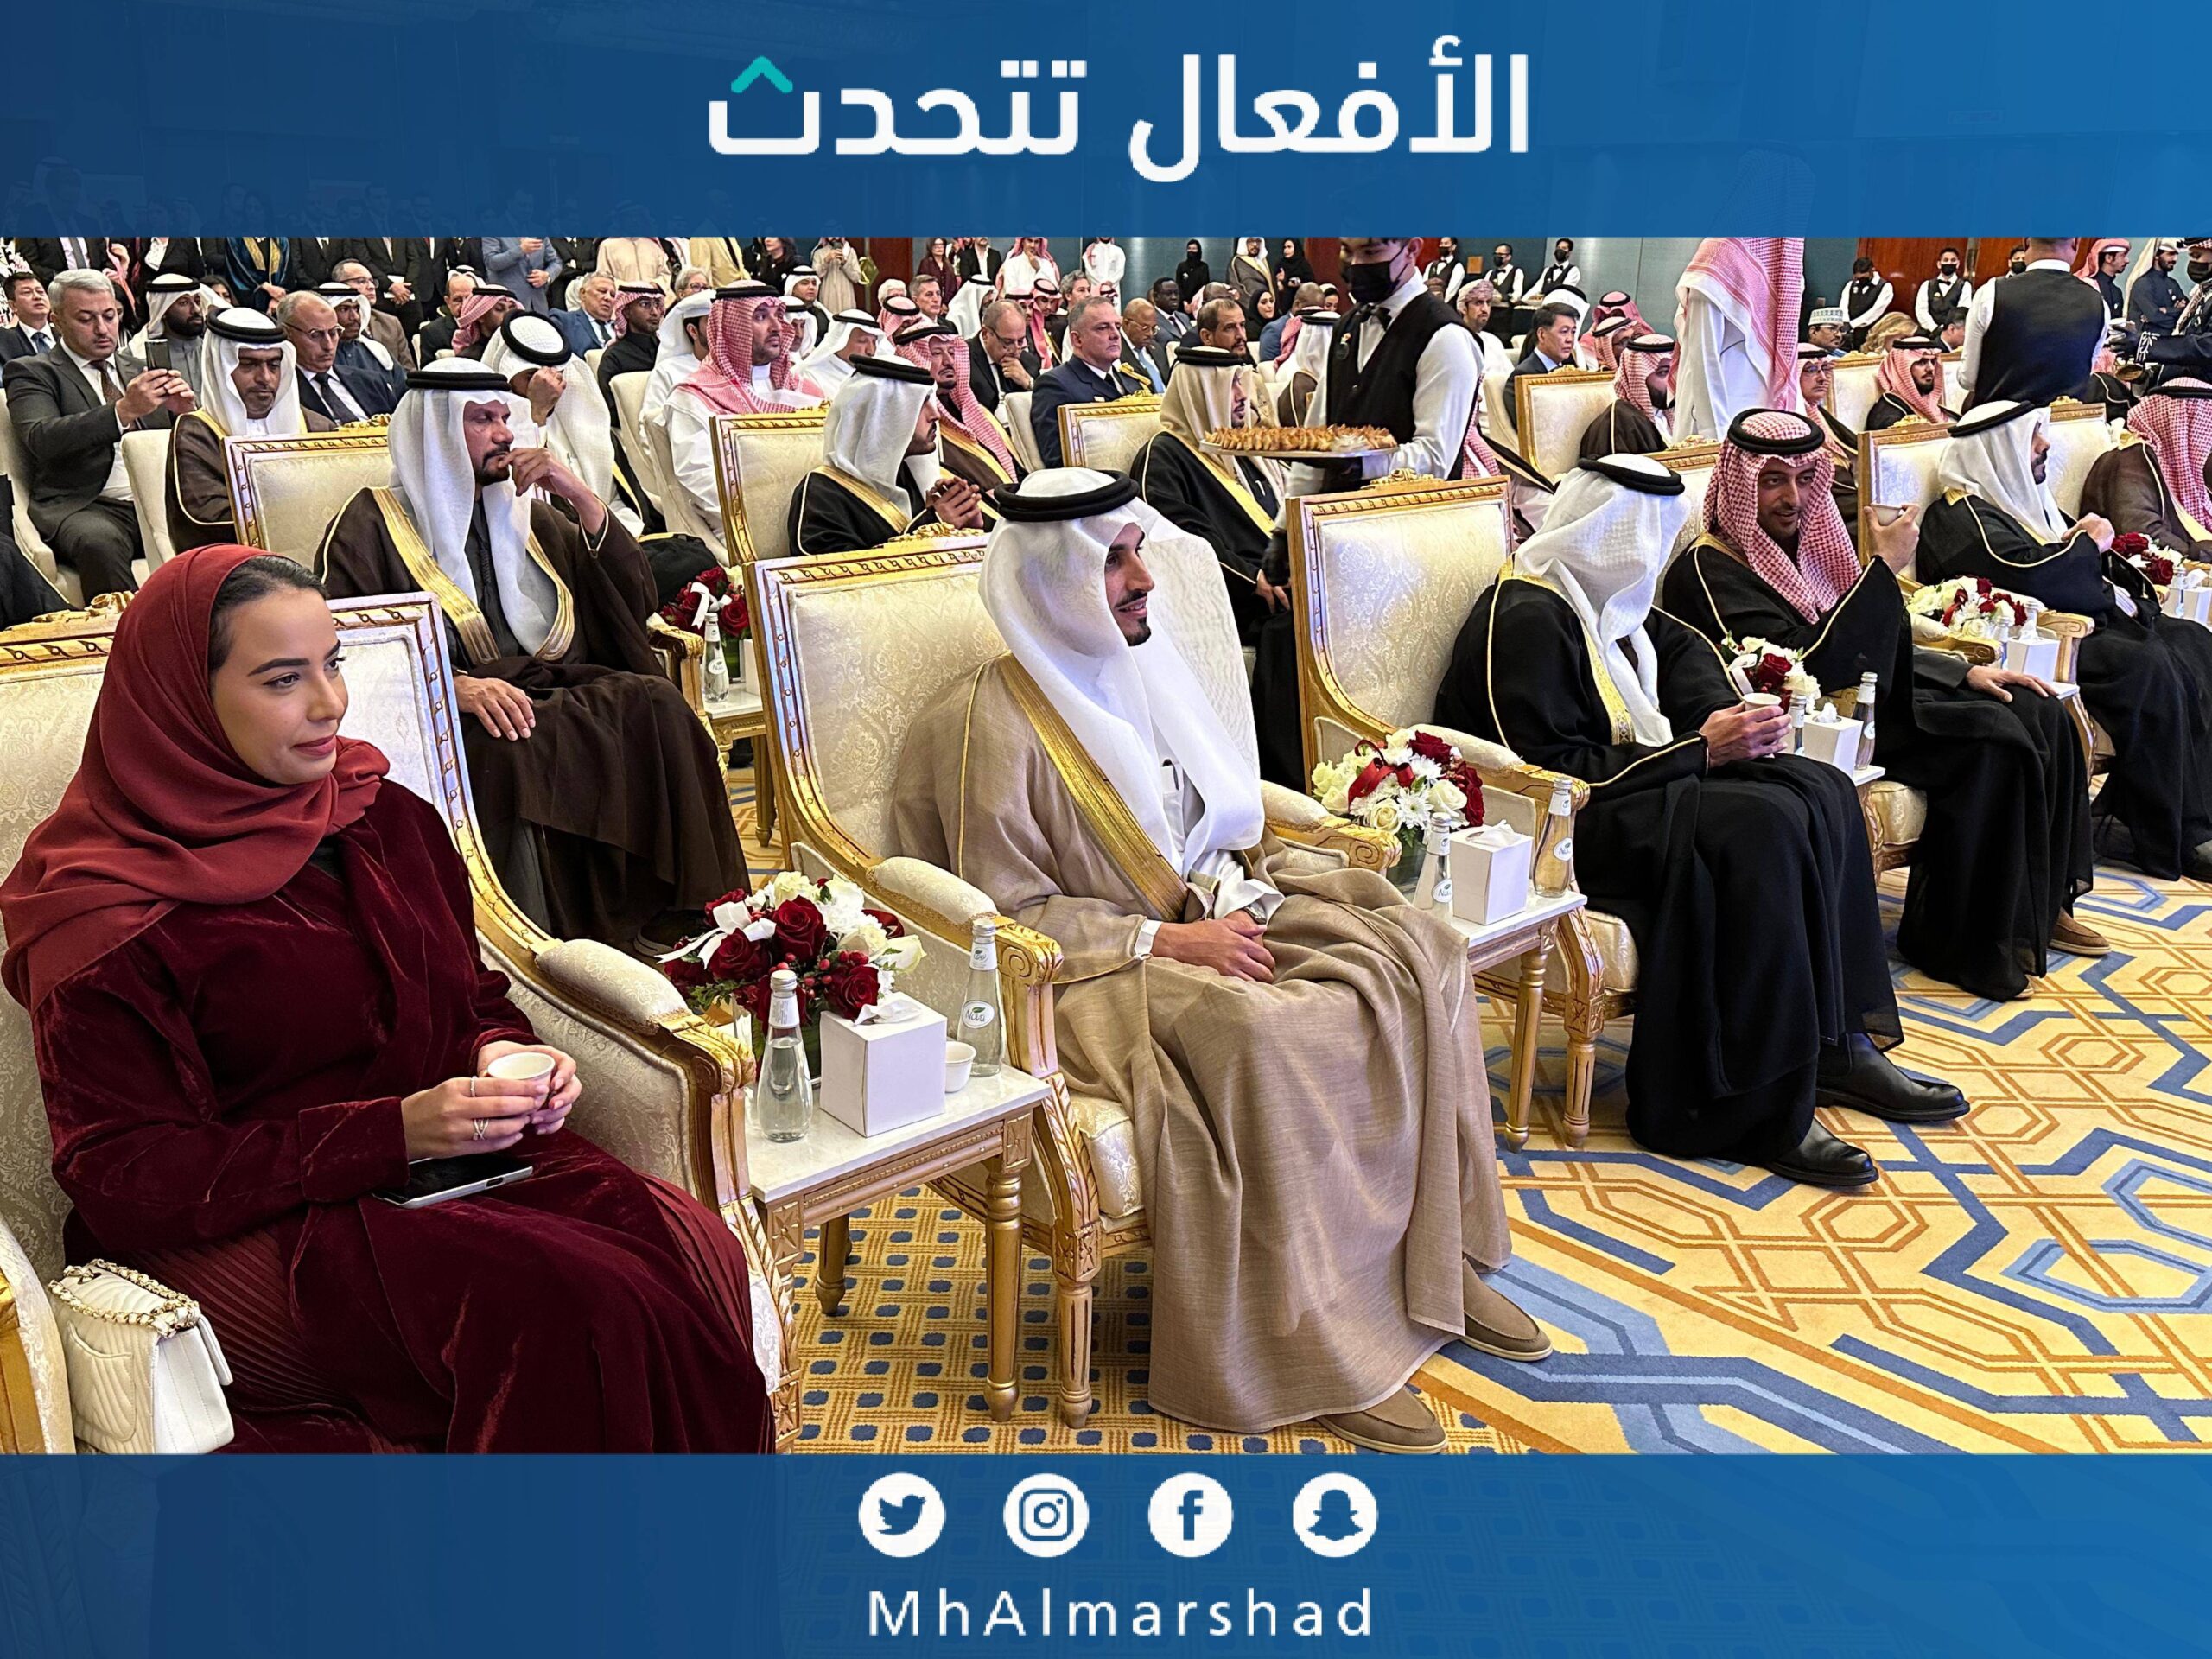 احتفال سفارة البحرين بمناسبة  #العيد_الوطني_البحريني، الذي اقيم بحضور سمو نائب أمير منطقة الرياض.